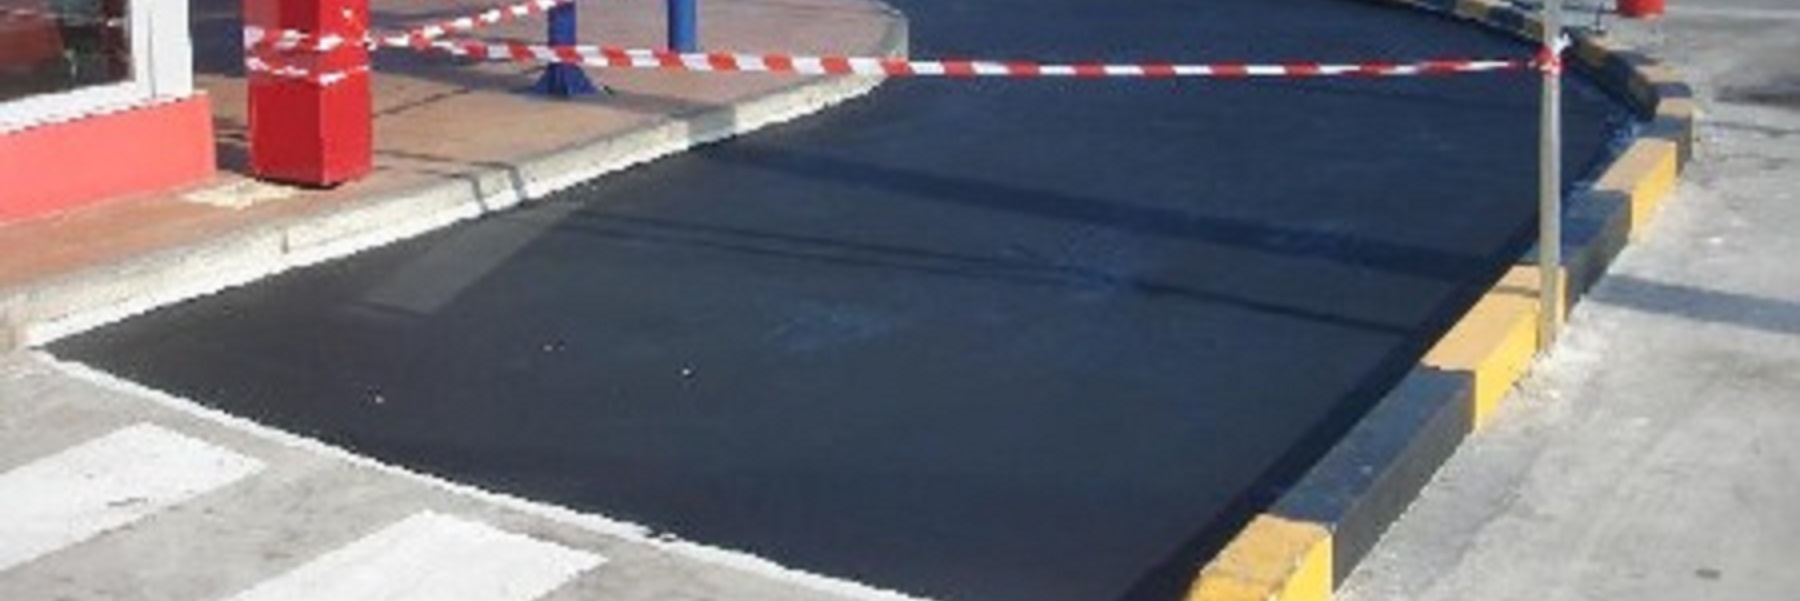 Construcción y reparación de rampas de acceso - Pavimentos Pavipor